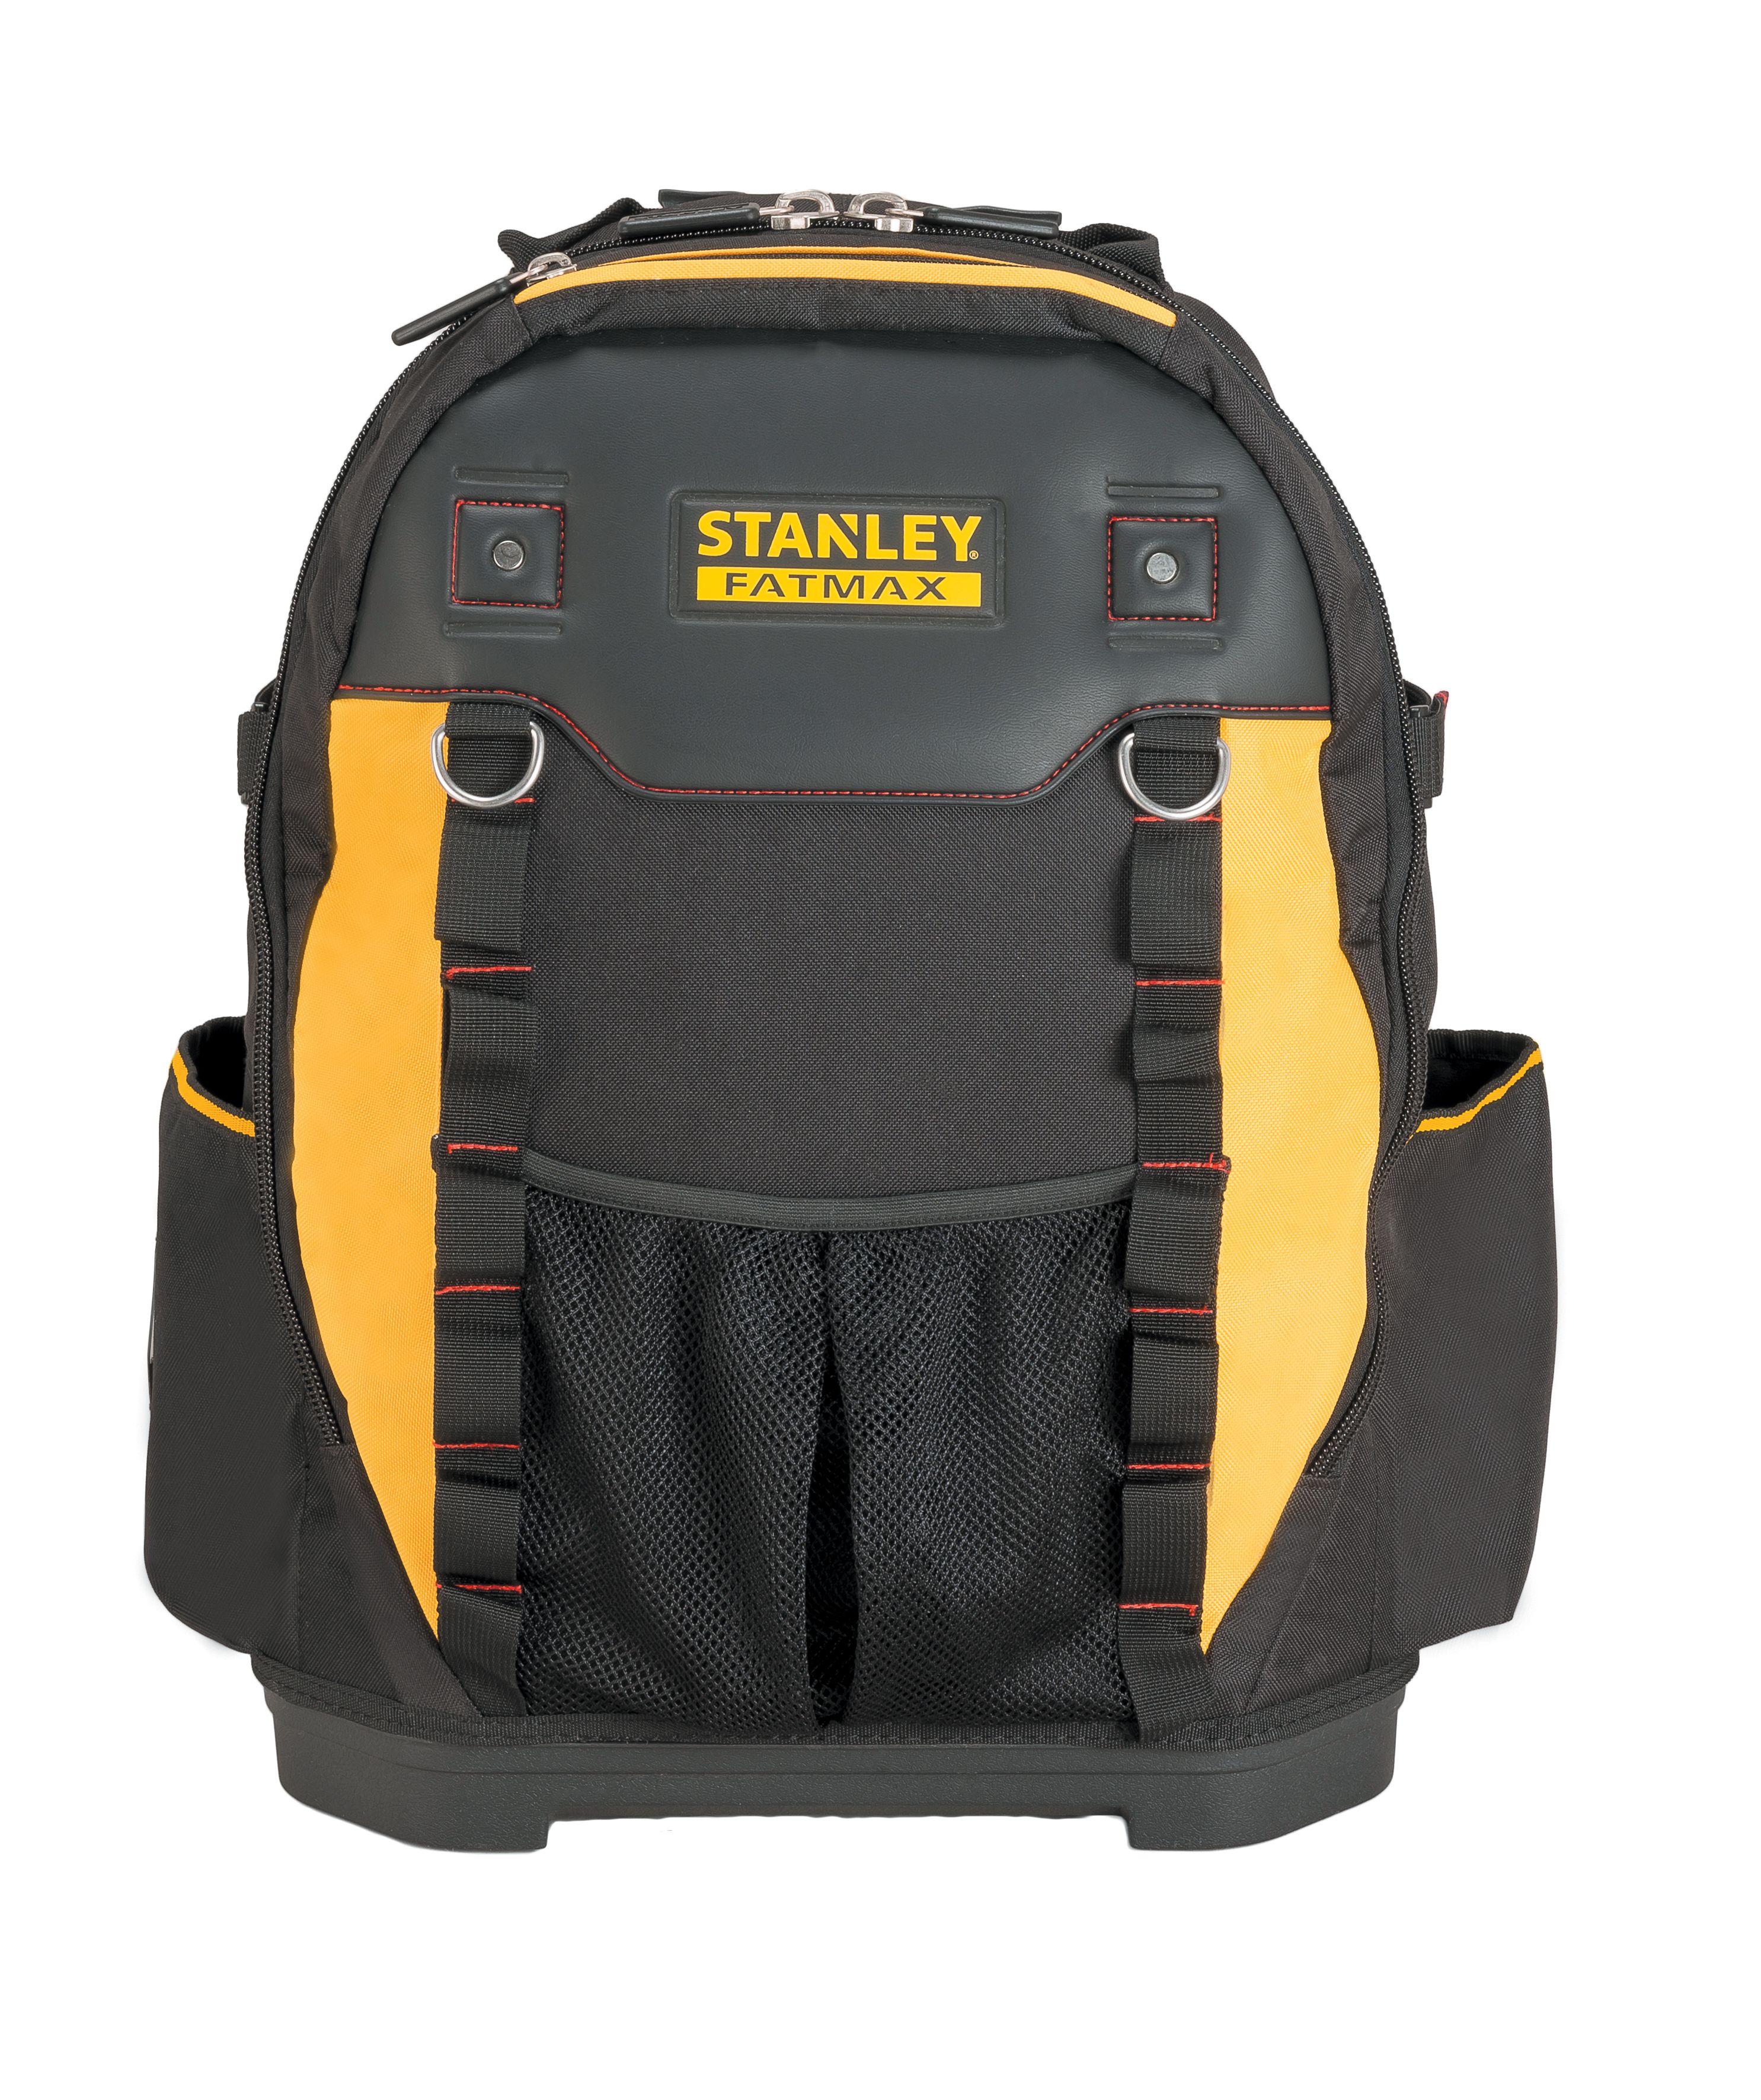 Stanley 1-95-611 FatMax Tool Backpack